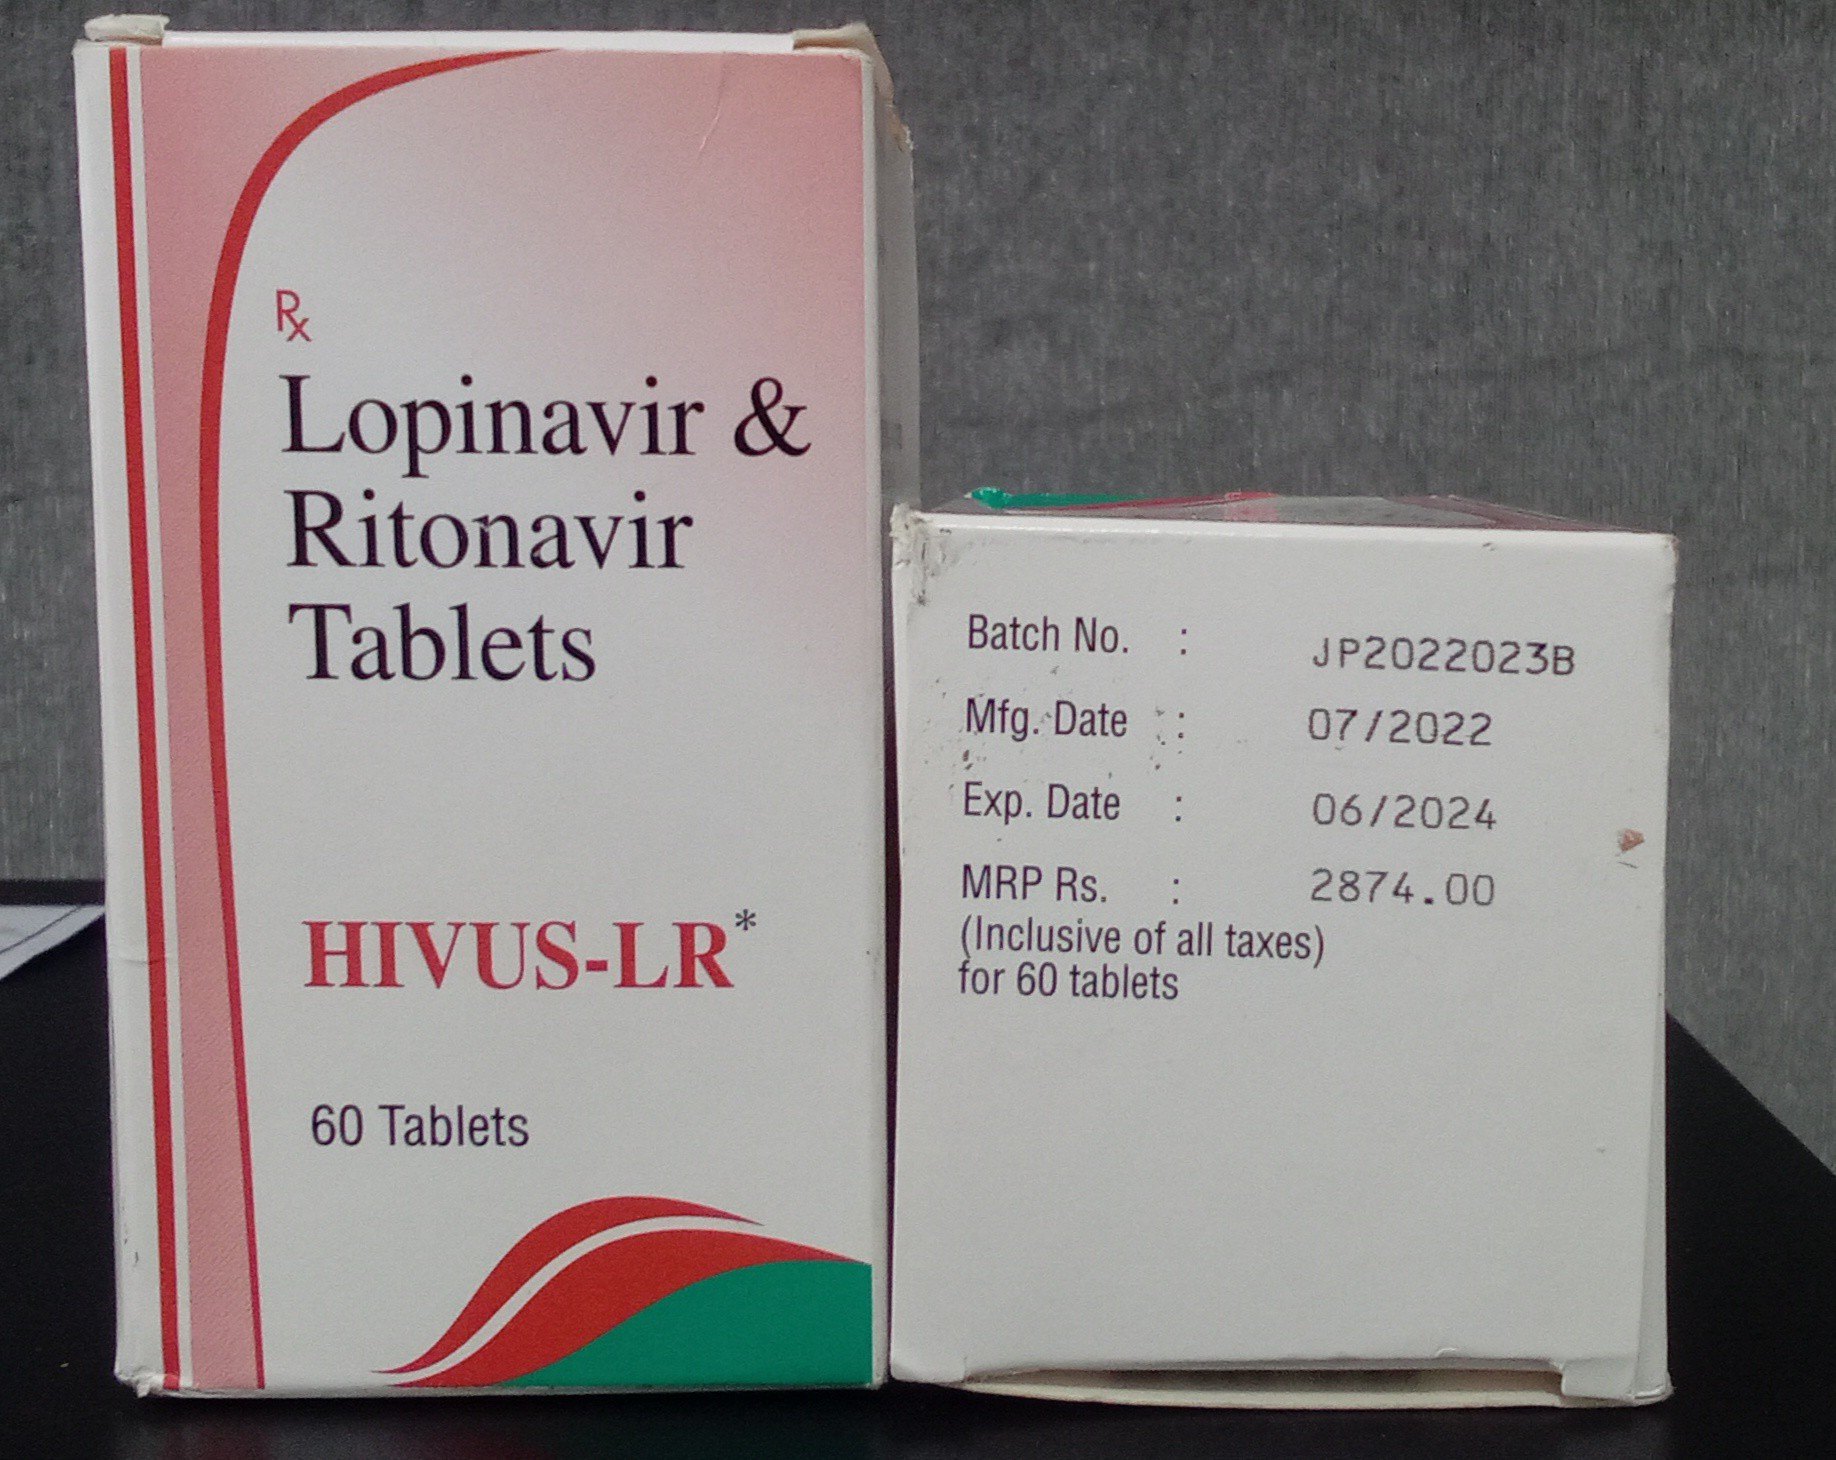 Lopinavir and Ritonavir tablets